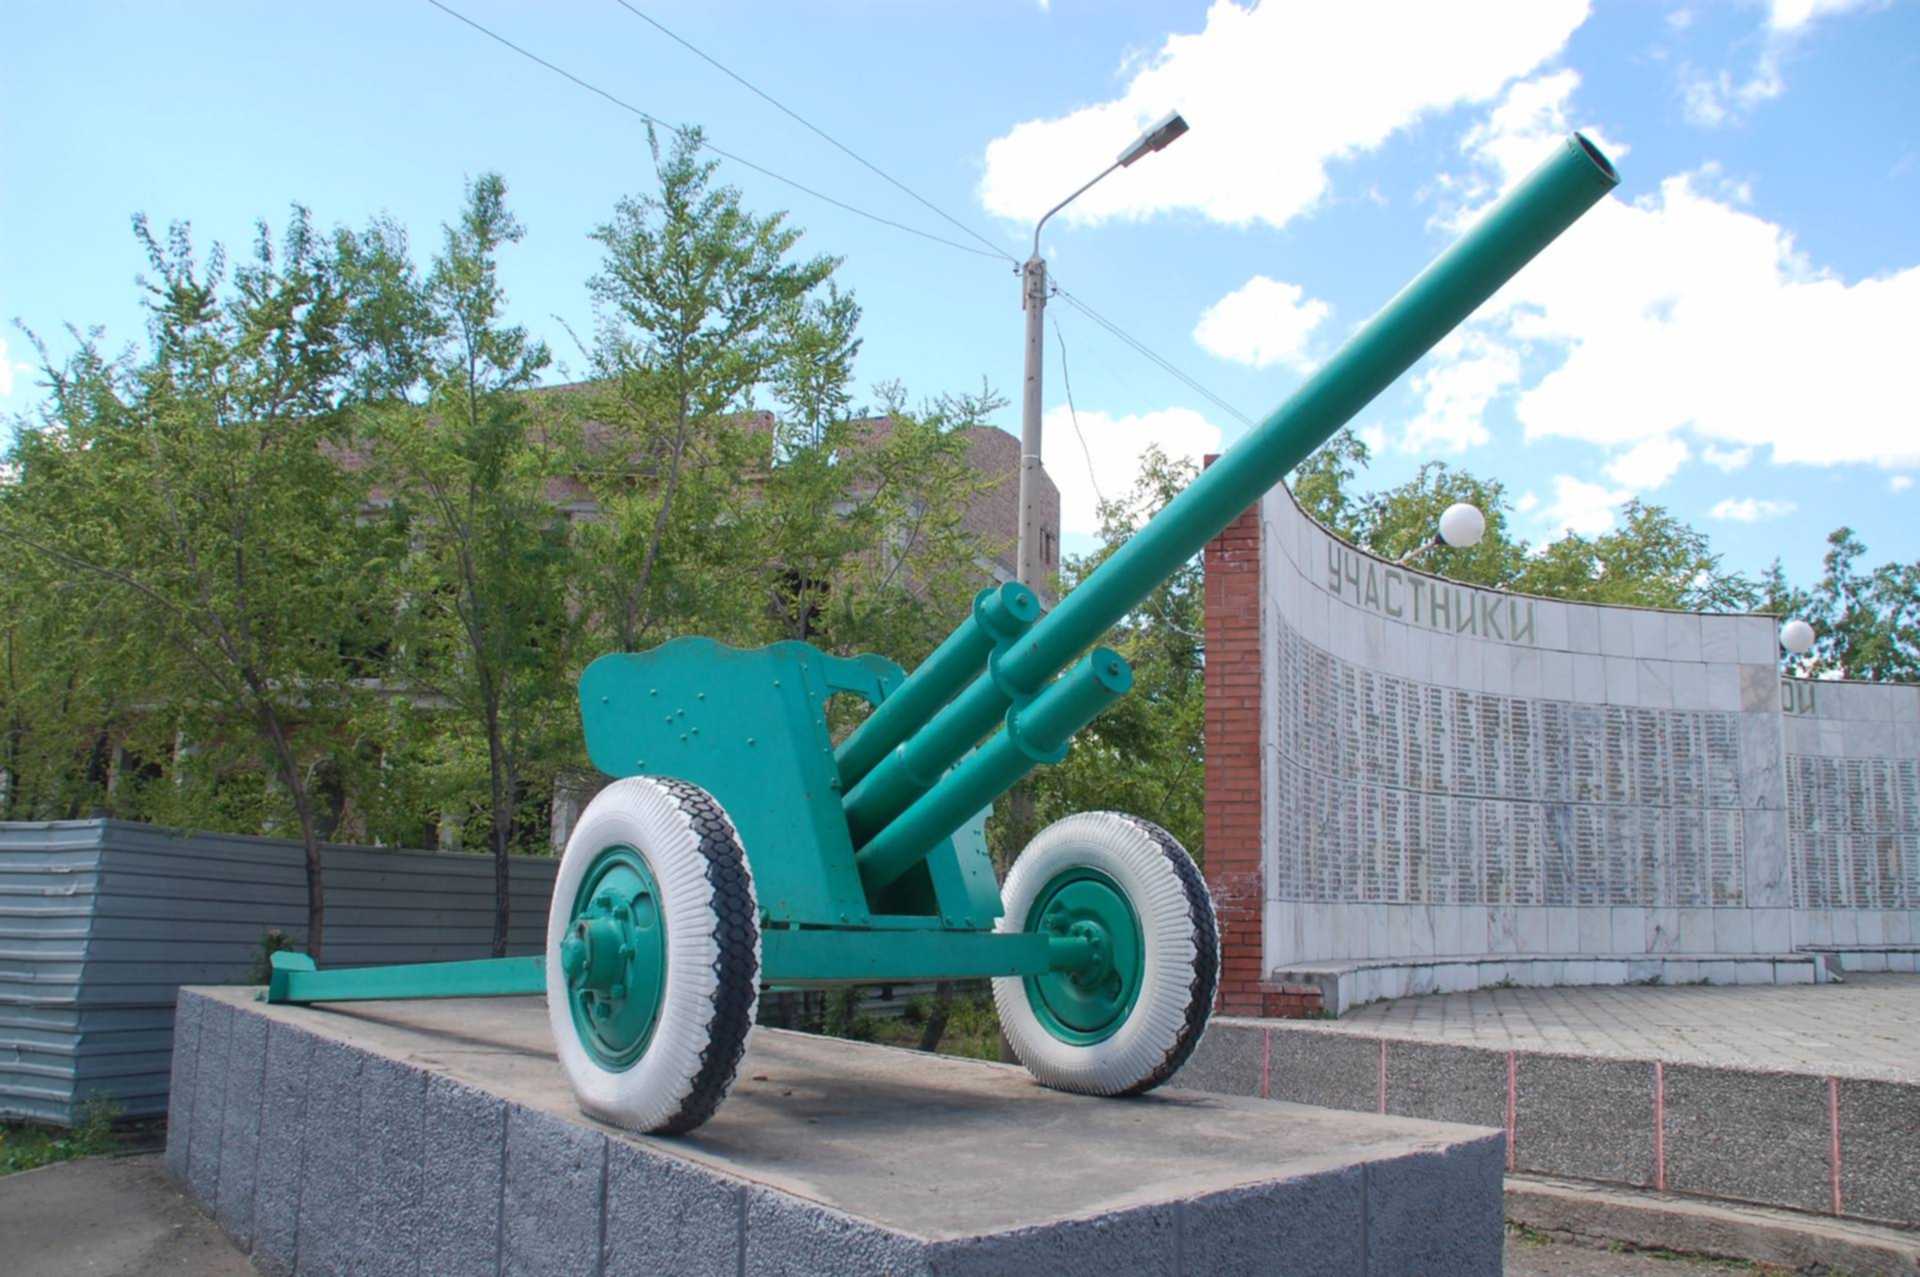 Черногорск памятник самолет